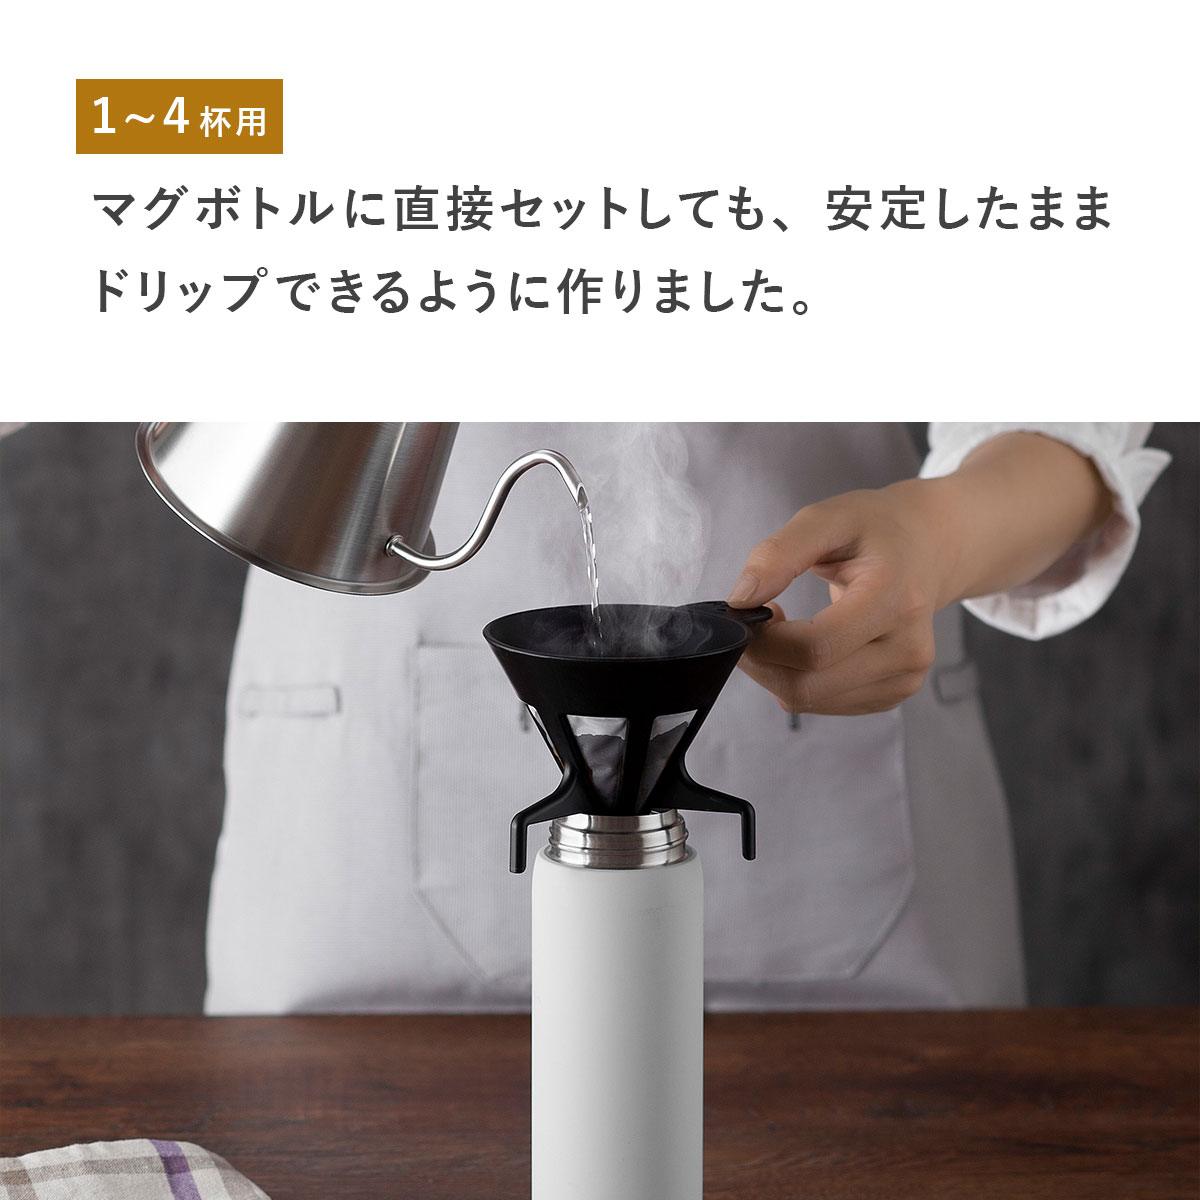 世界的に珈琲考具 フィルターレスドリッパー 日本製 ドリッパー KOGU コーヒーフィルター 下村企販 エコ フィルター コーヒー、ティー用品 